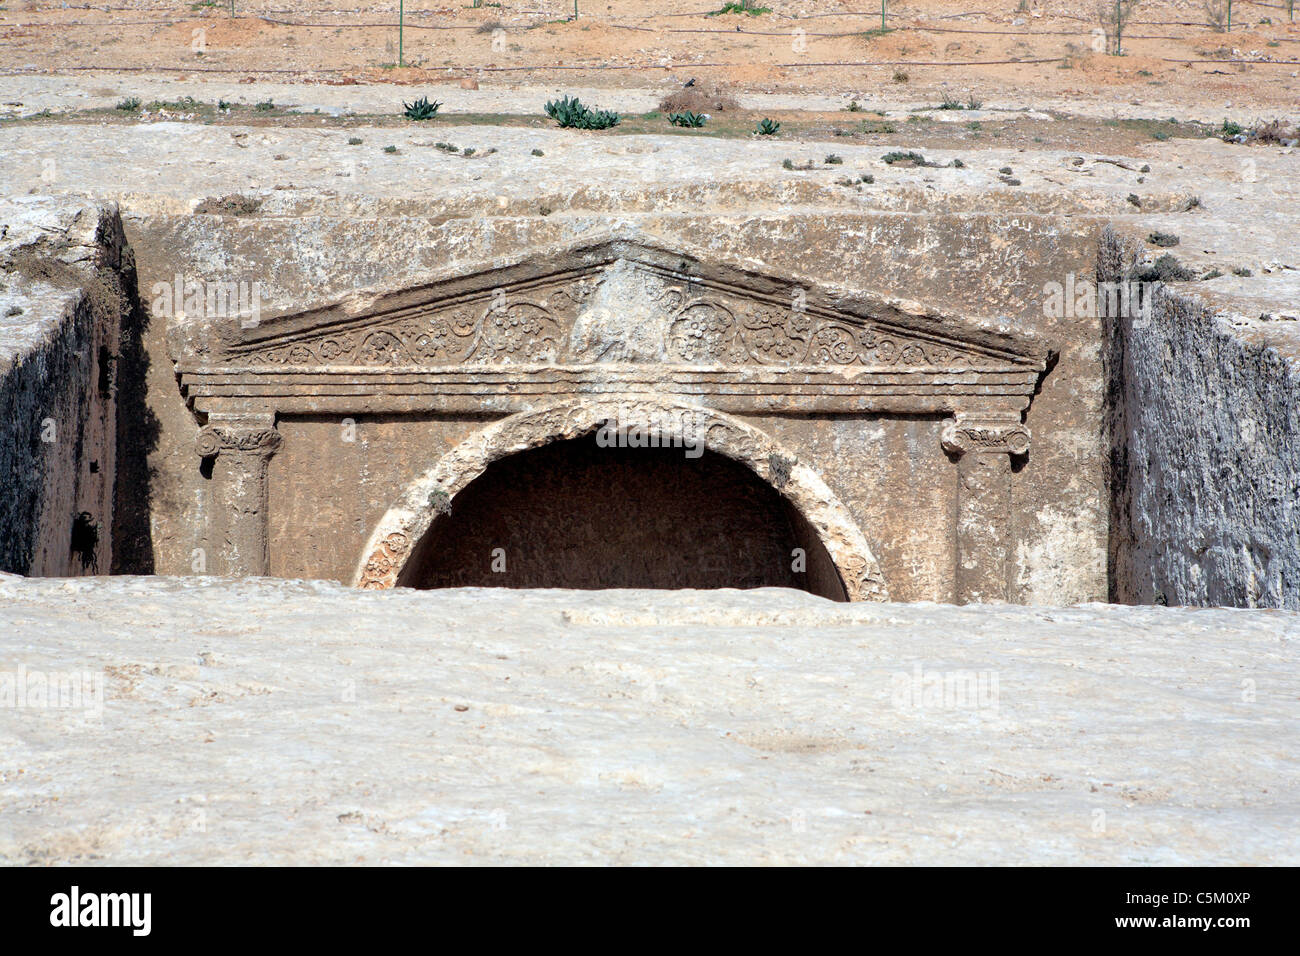 Tombeau romain près de Sleepers' cave, Amman, Jordanie Banque D'Images